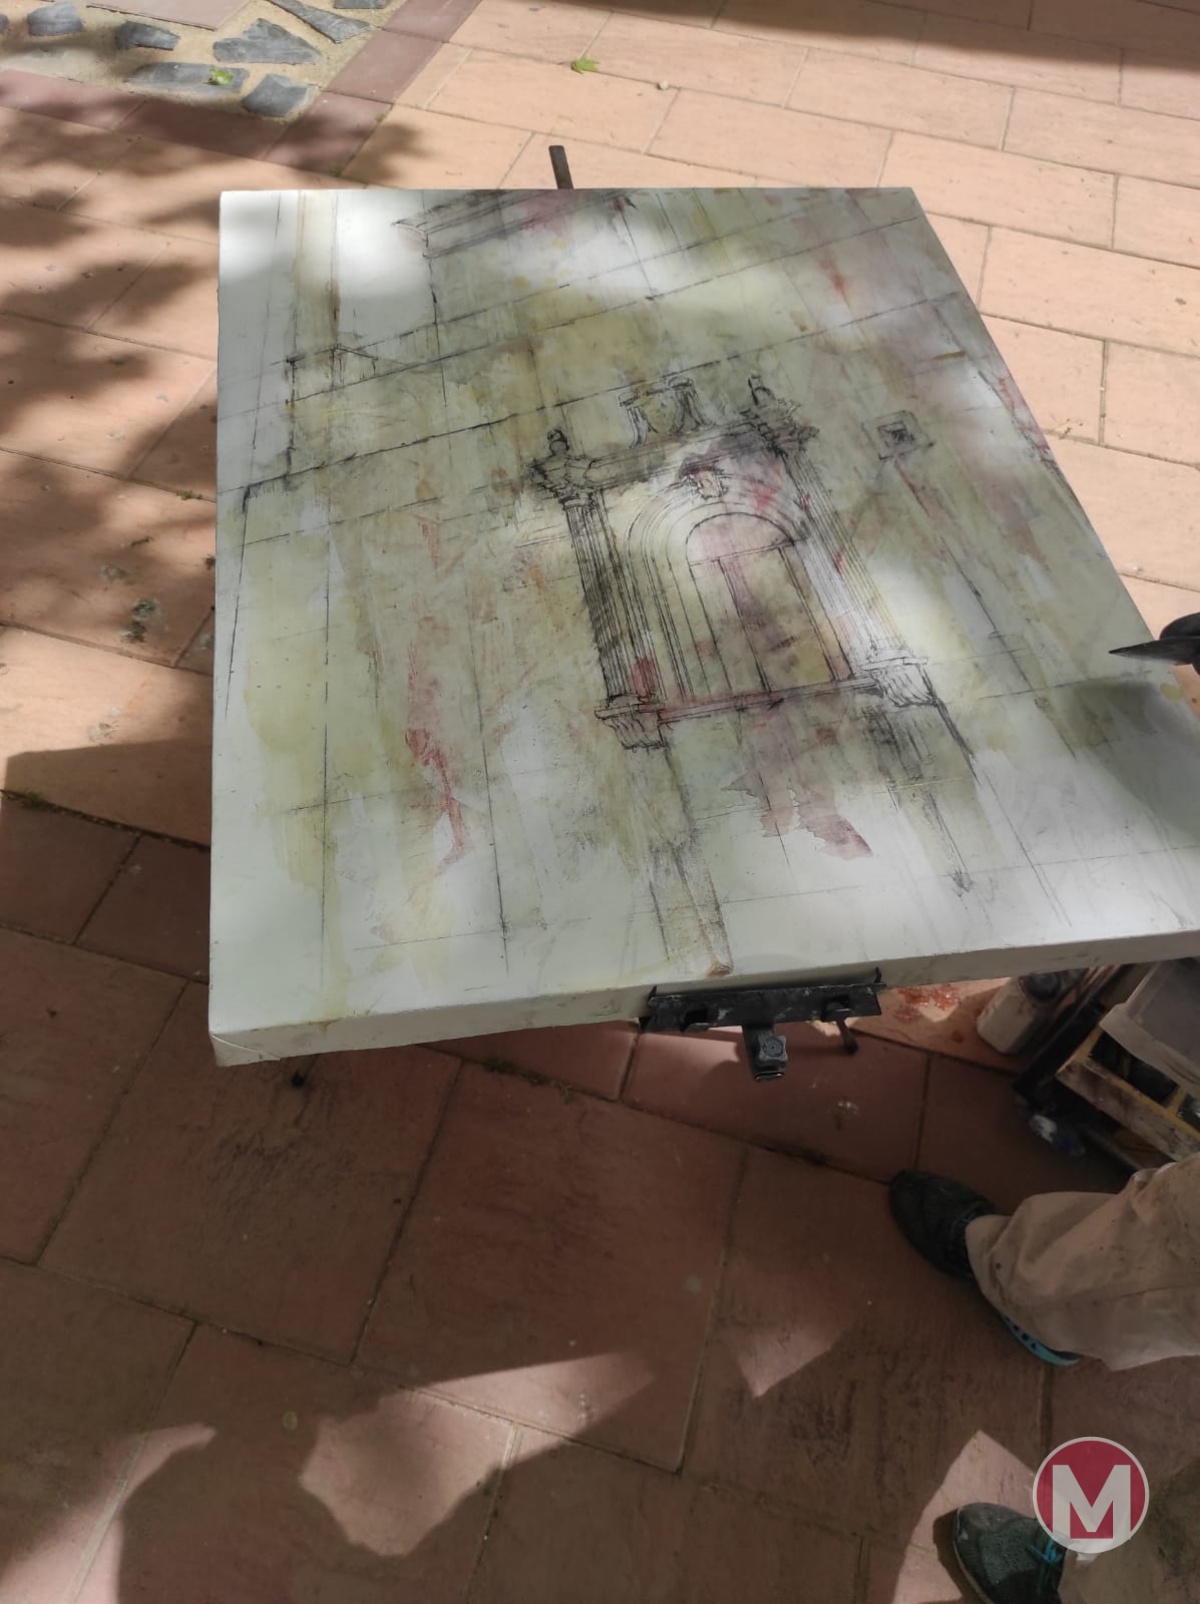 Miguel Carlos Montesinos gana el VIII Concurso de Pintura Rápida “El lugar de La Mancha” de Argamasilla de Alba